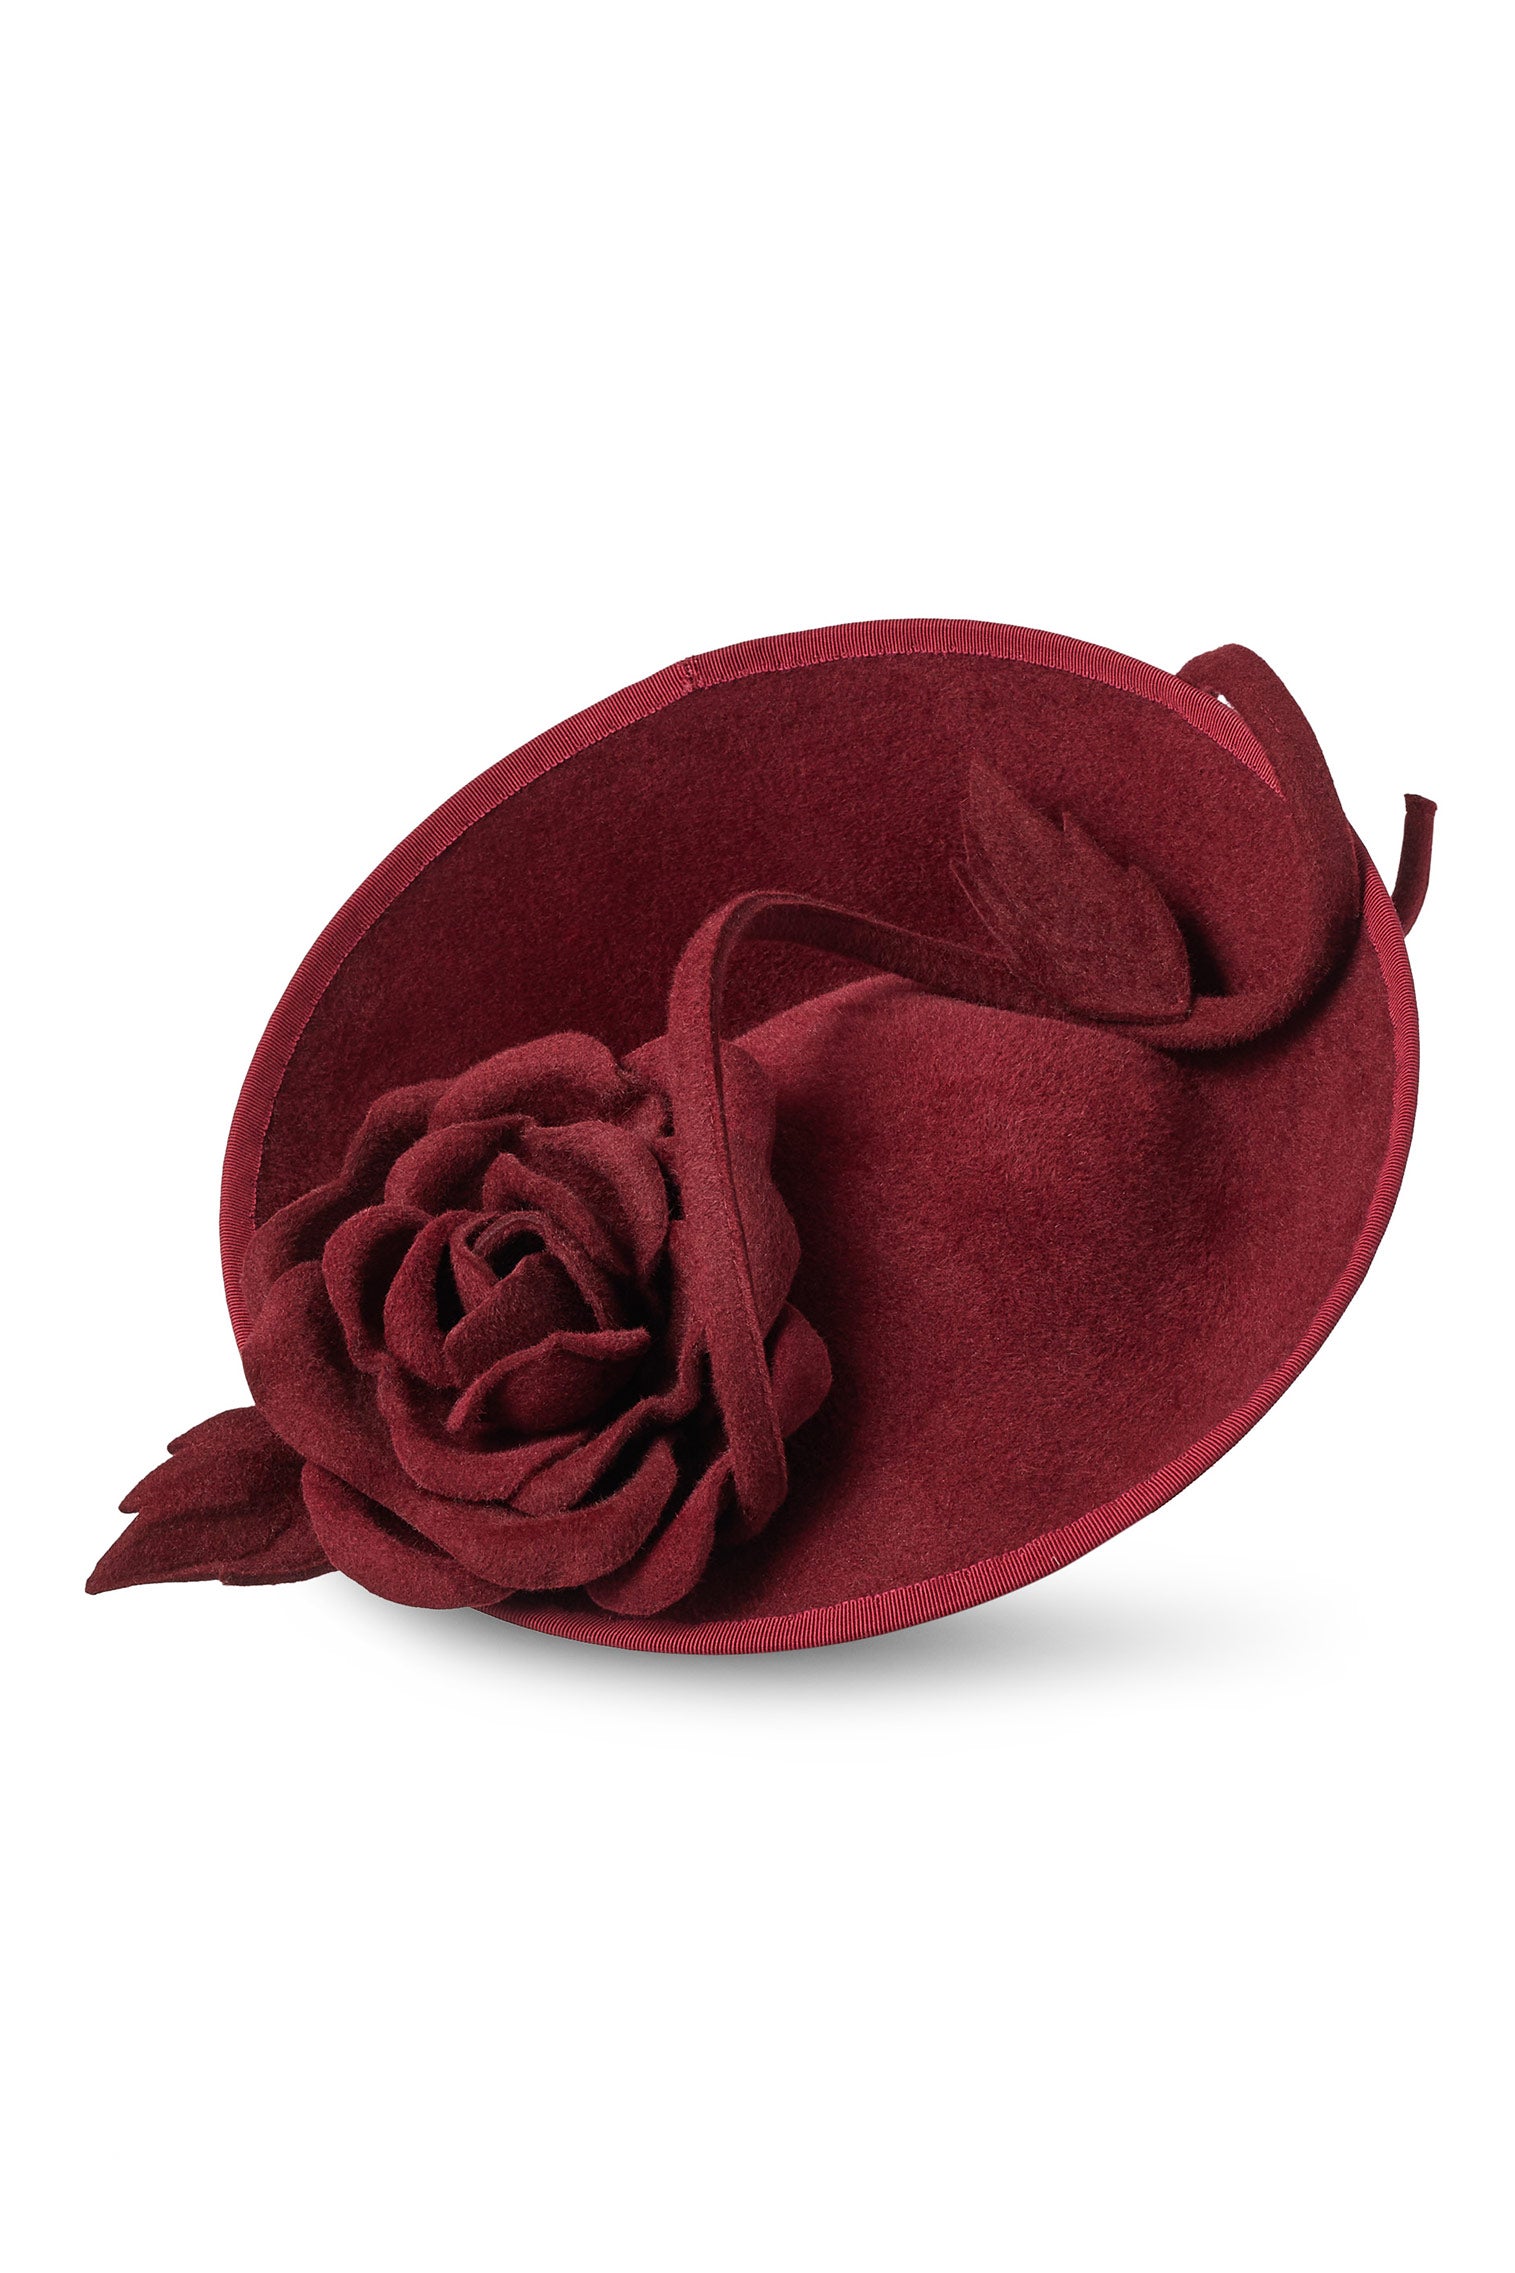 Belgravia Rose Hat - Kentucky Derby Hats for Women - Lock & Co. Hatters London UK